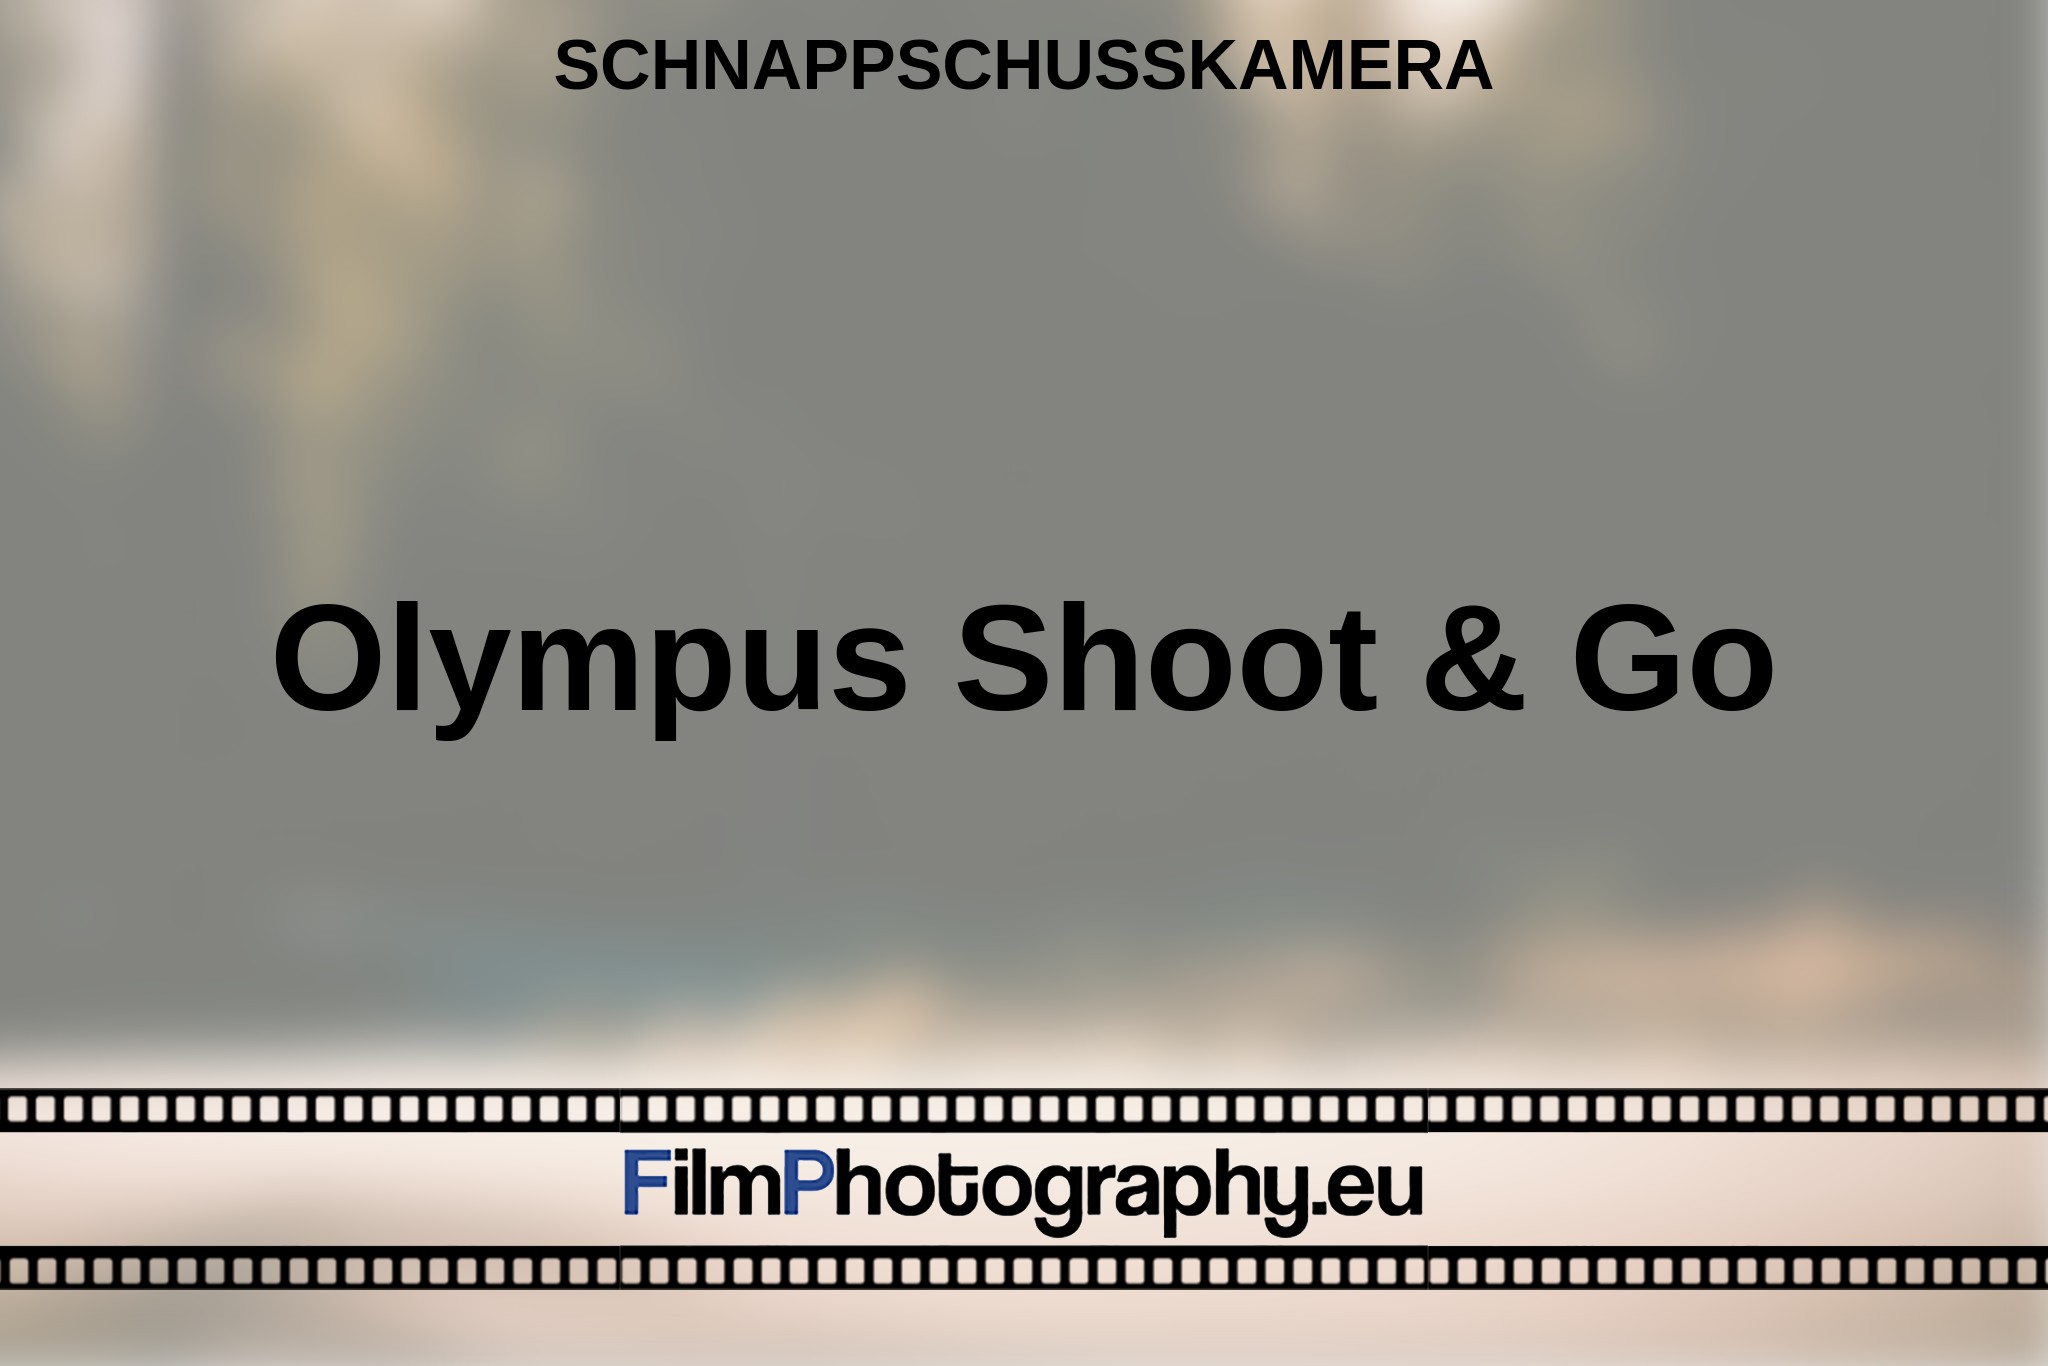 olympus-shoot-go-schnappschusskamera-bnv.jpg